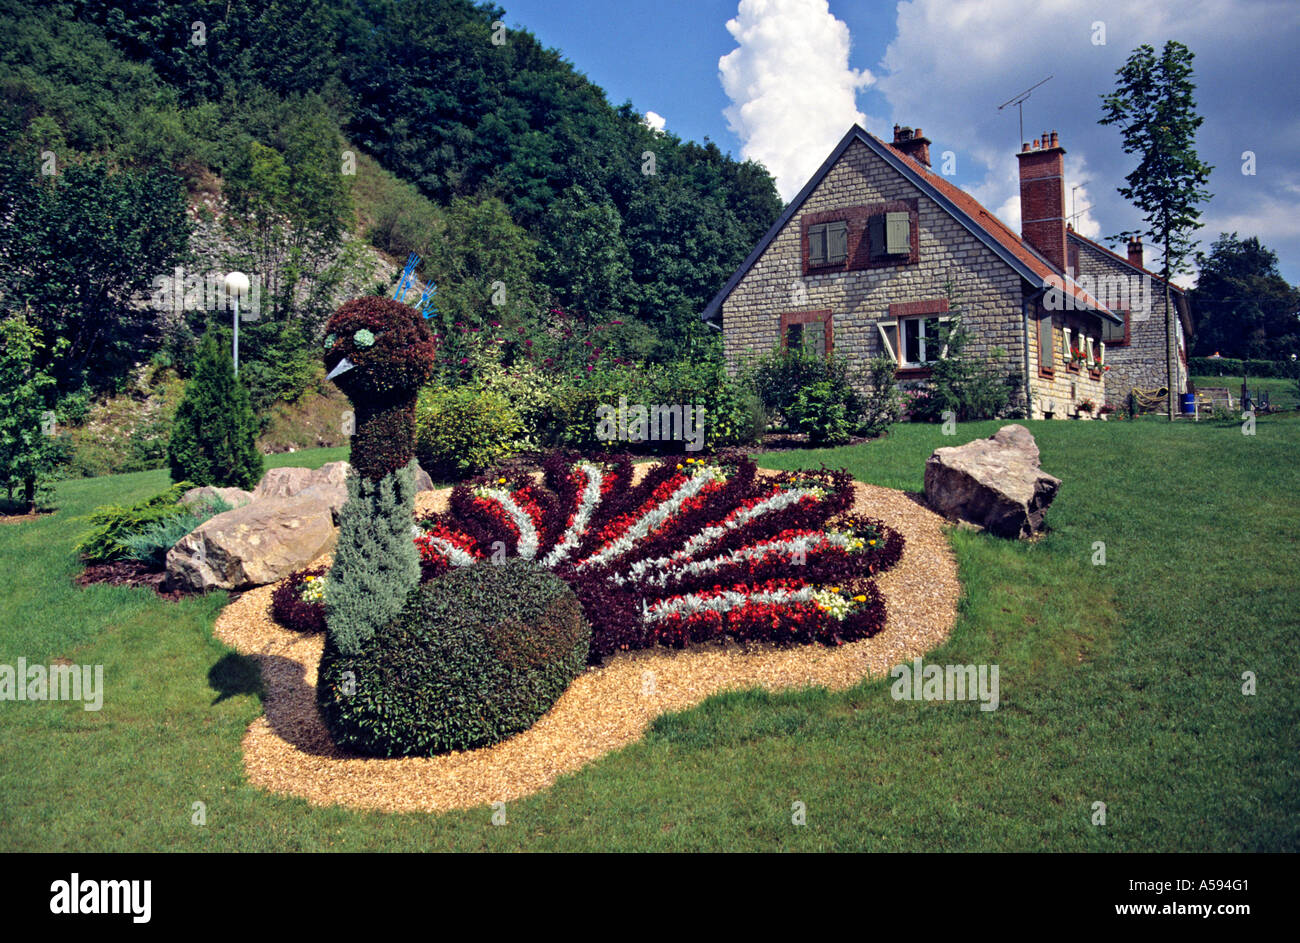 Ein Formschnitt Pfau in einem Garten in Chaumont Haute-Marne, Frankreich Stockfoto